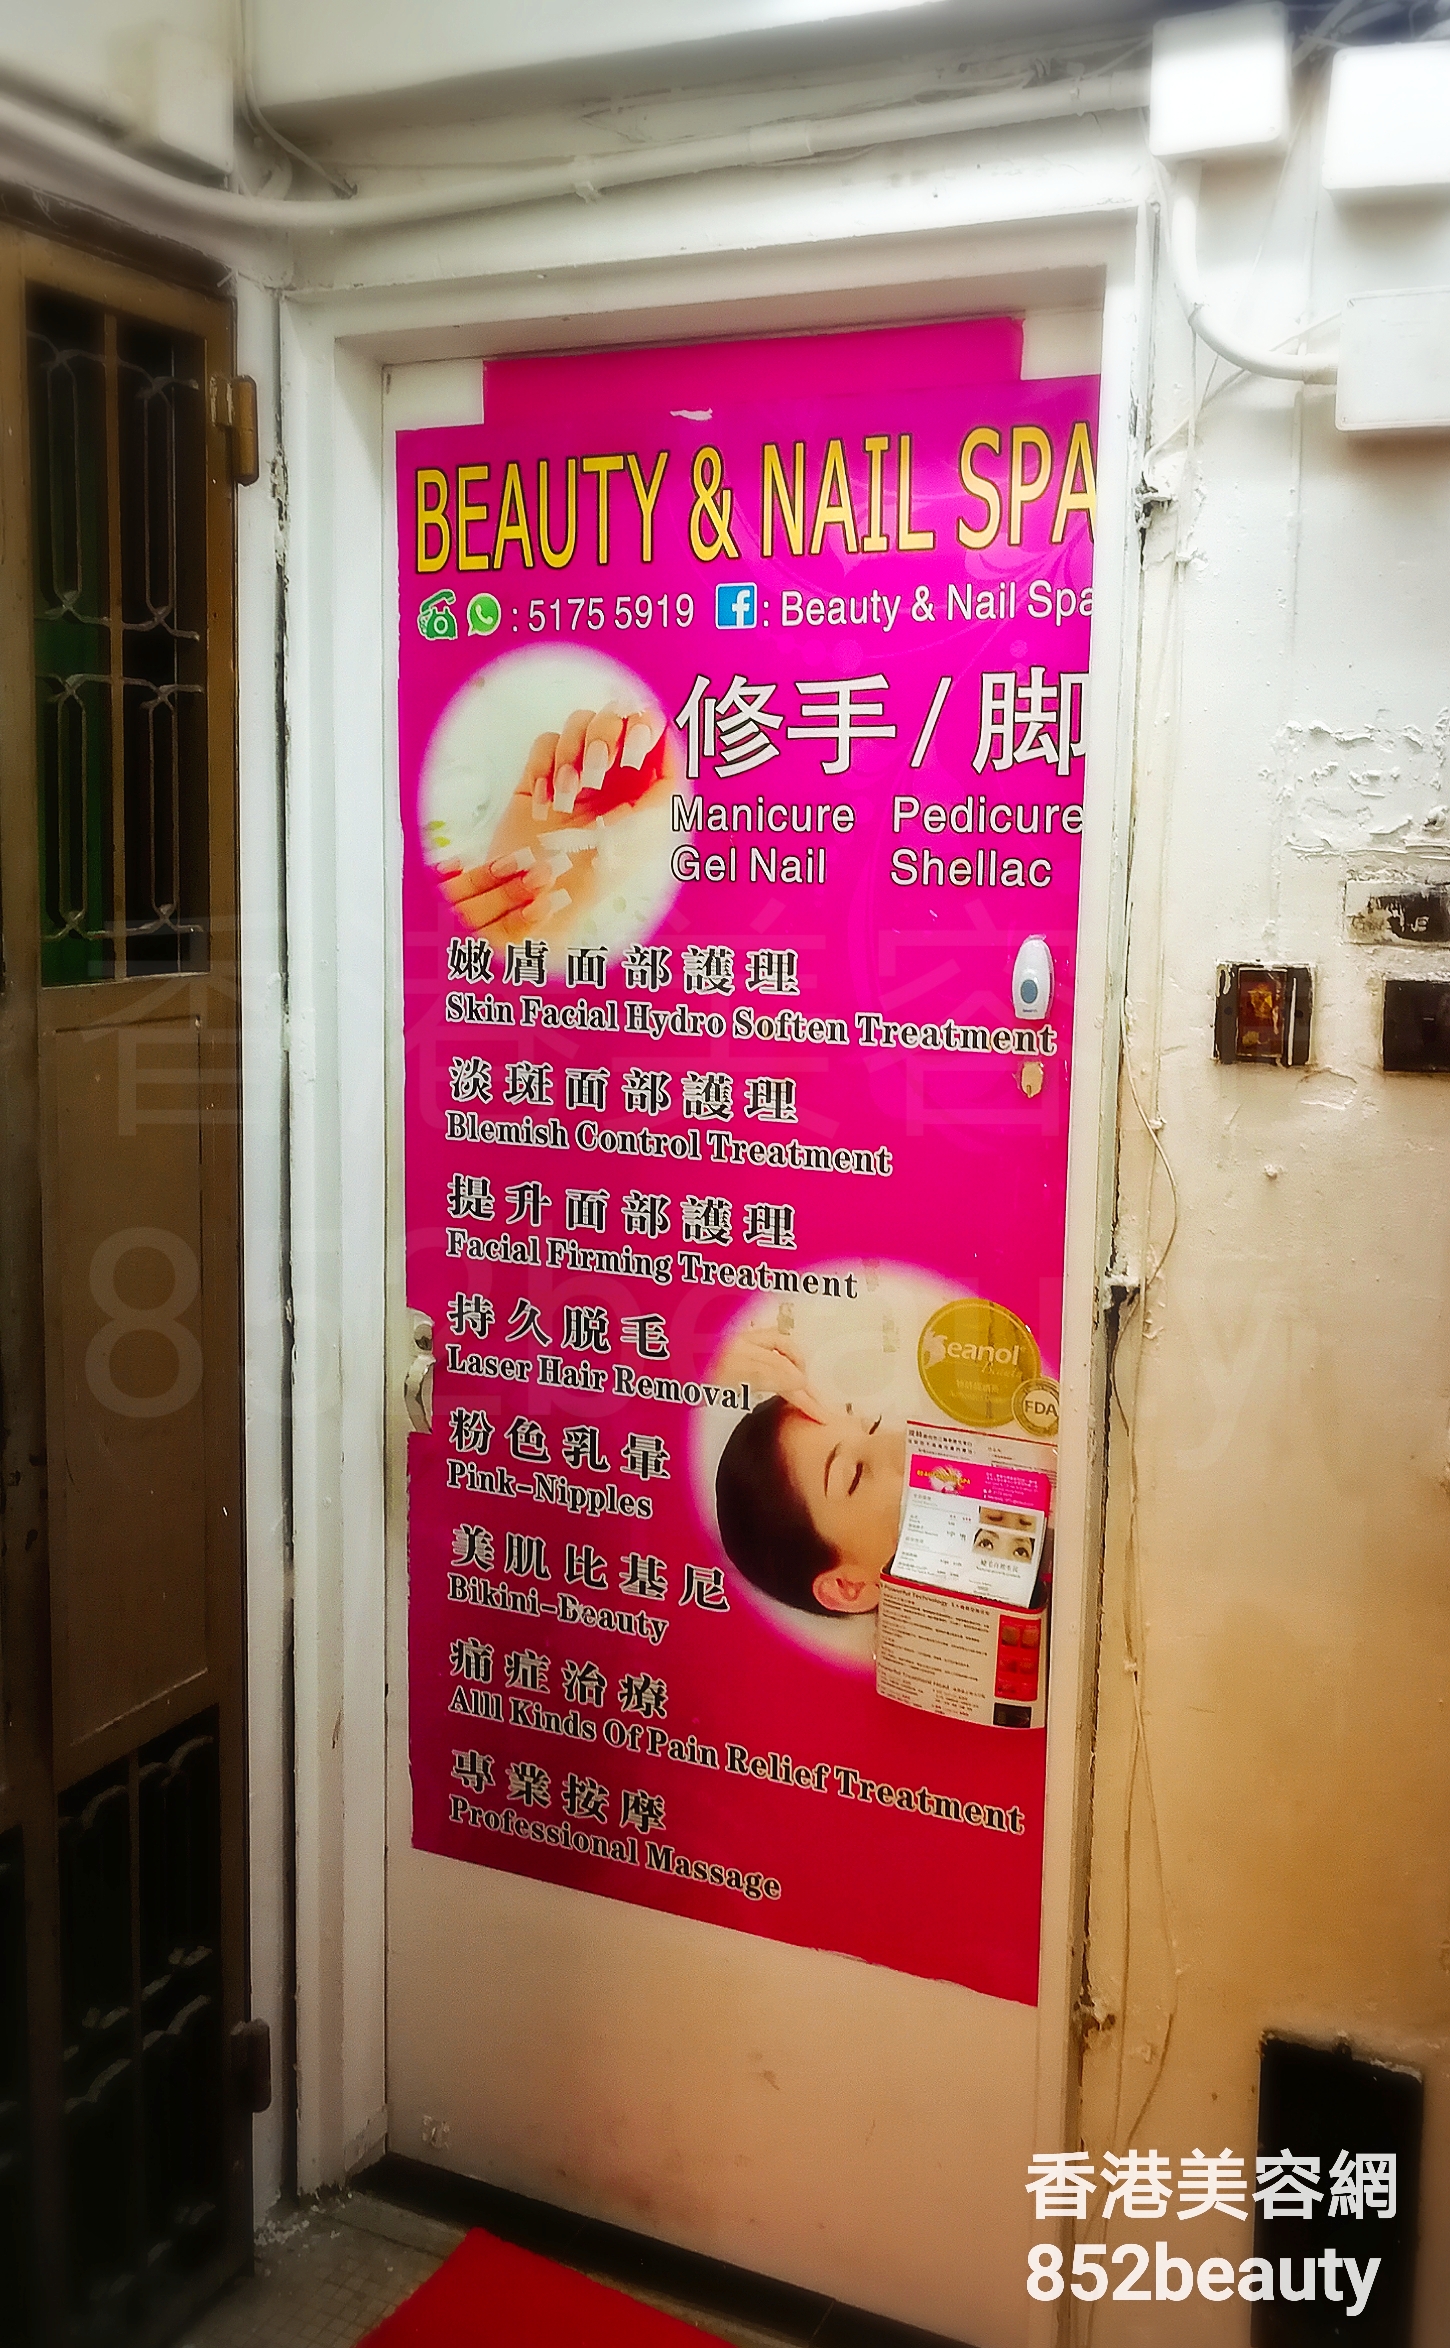 脱毛: Beauty & Nail Spa